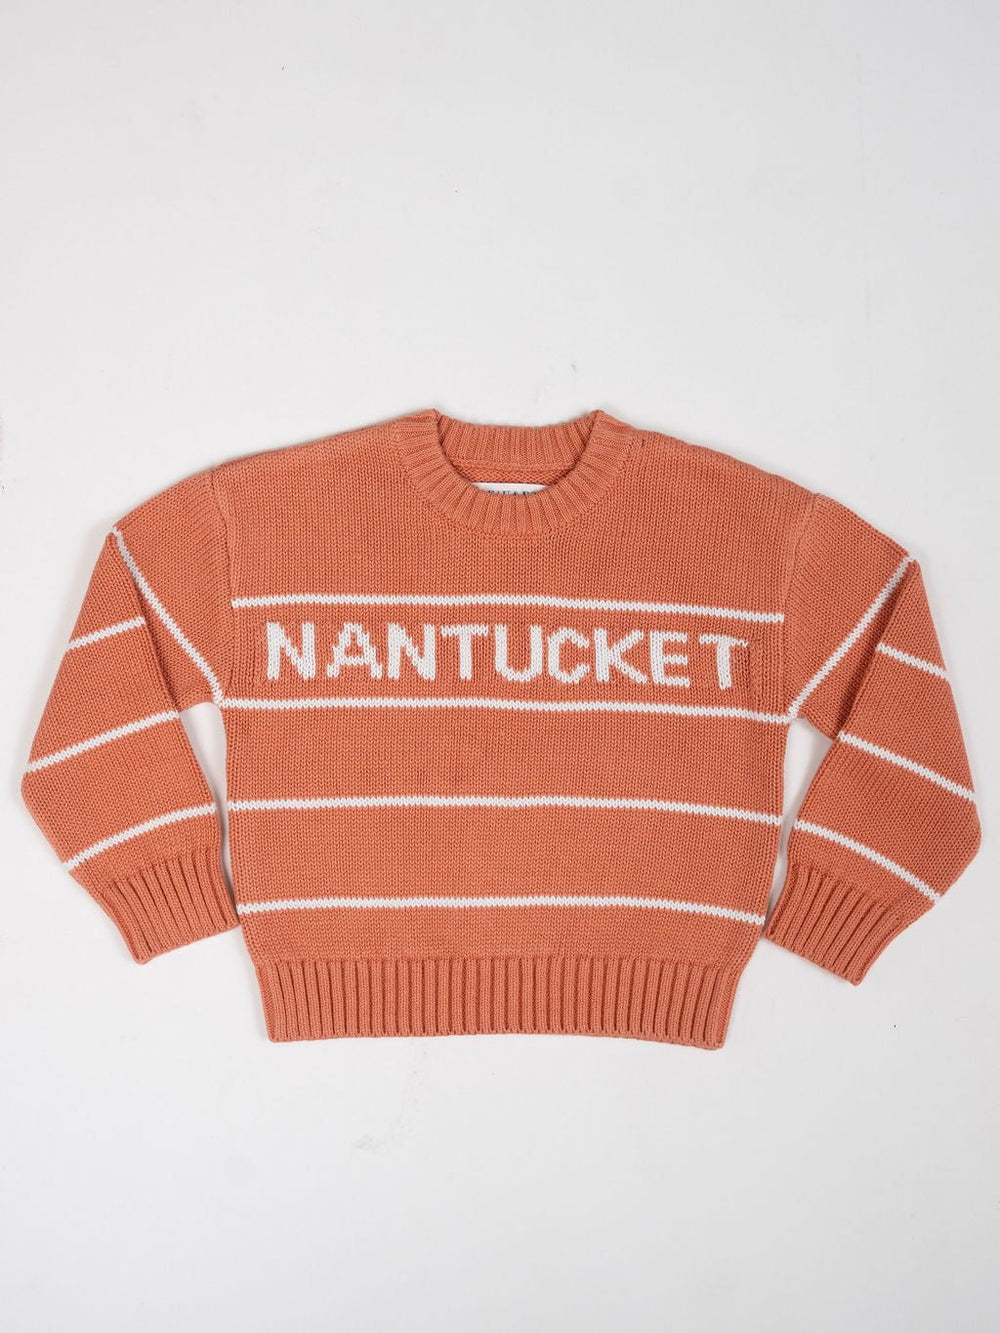 Beau & Ro Sweater Kids Nantucket Sweater in Nantucket Red Stripe